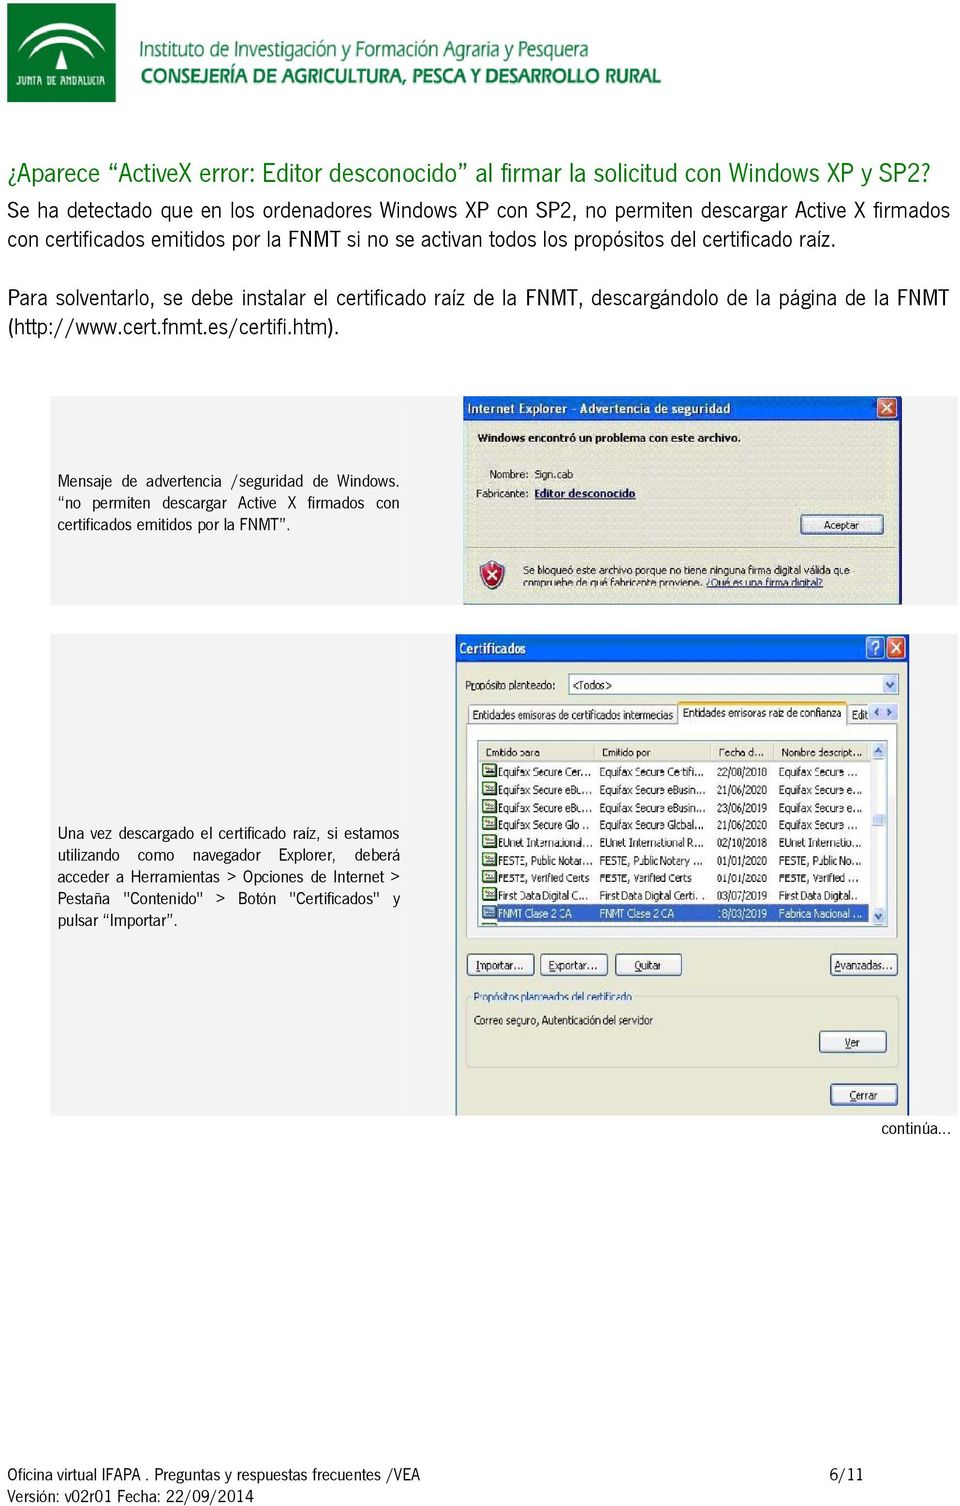 raíz. Para solventarlo, se debe instalar el certificado raíz de la FNMT, descargándolo de la página de la FNMT (http://www.cert.fnmt.es/certifi.htm).